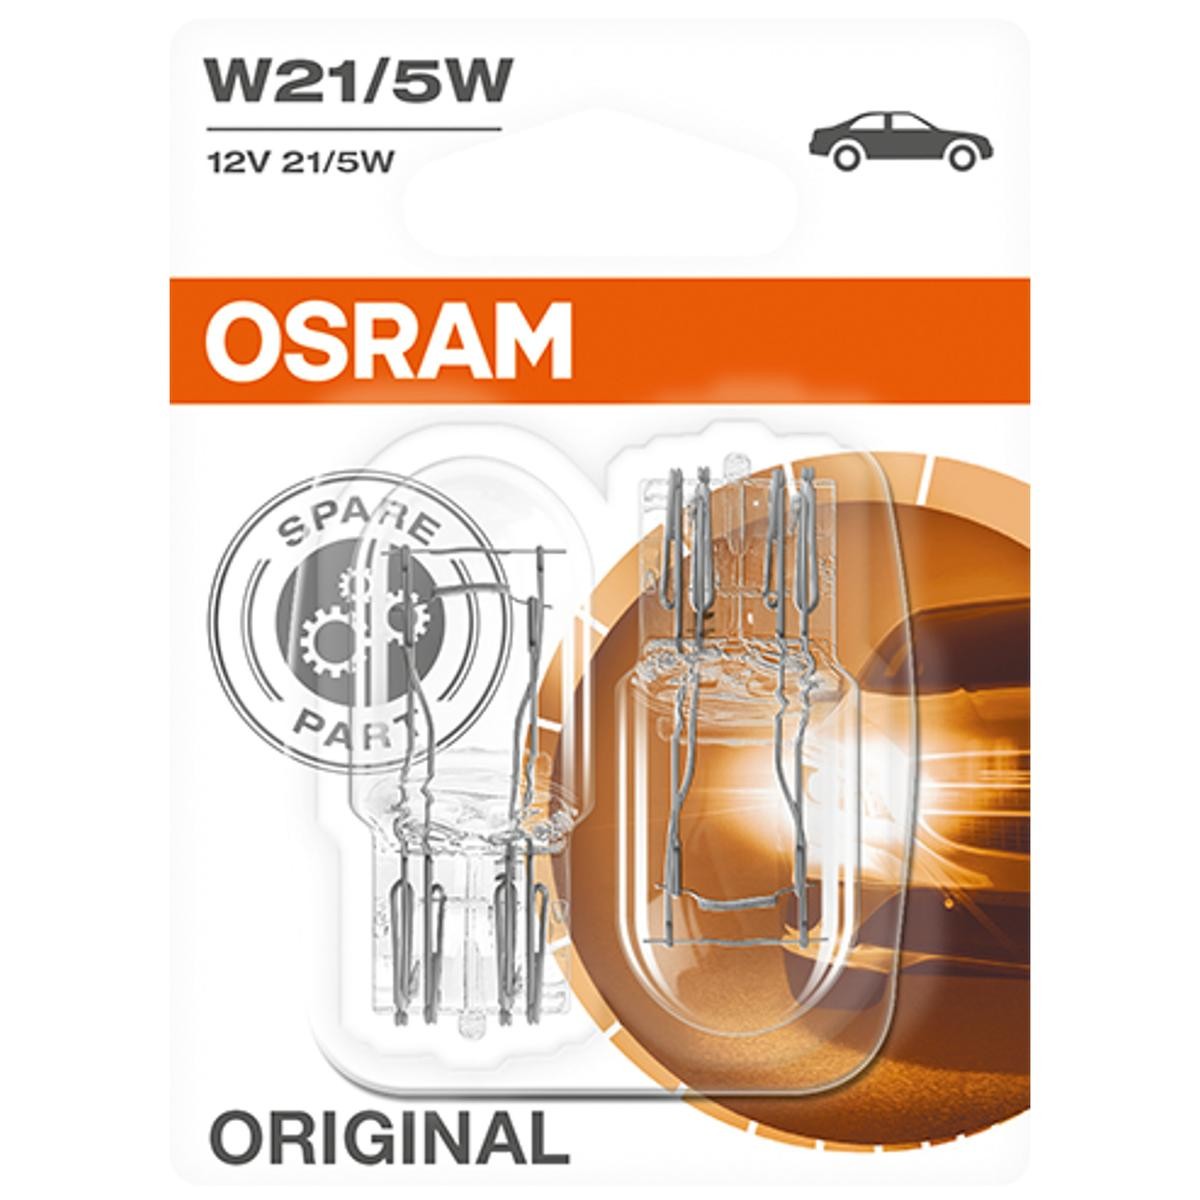 Subaru FORESTER ricambi di qualità originale W21/5W OSRAM 7515-02B